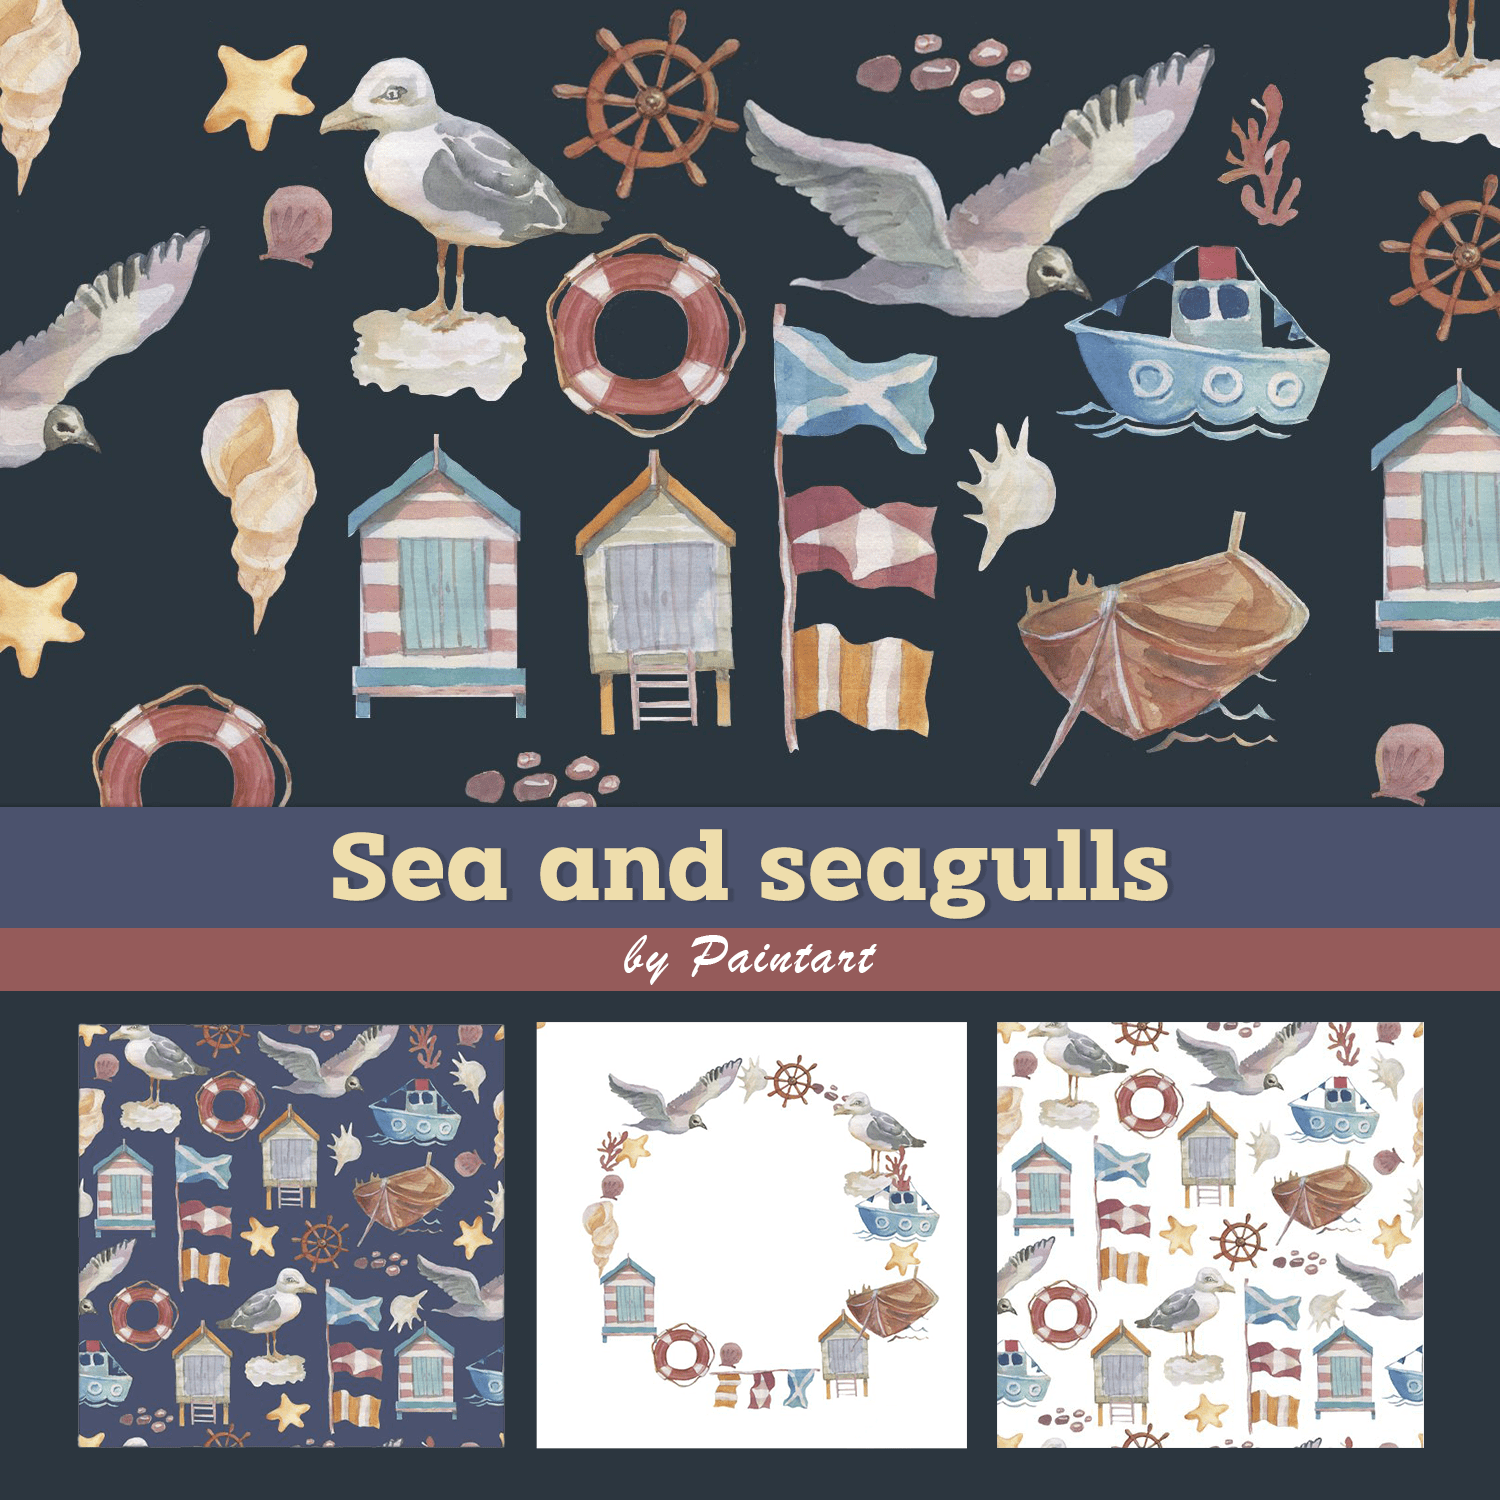 Sea and seagulls.